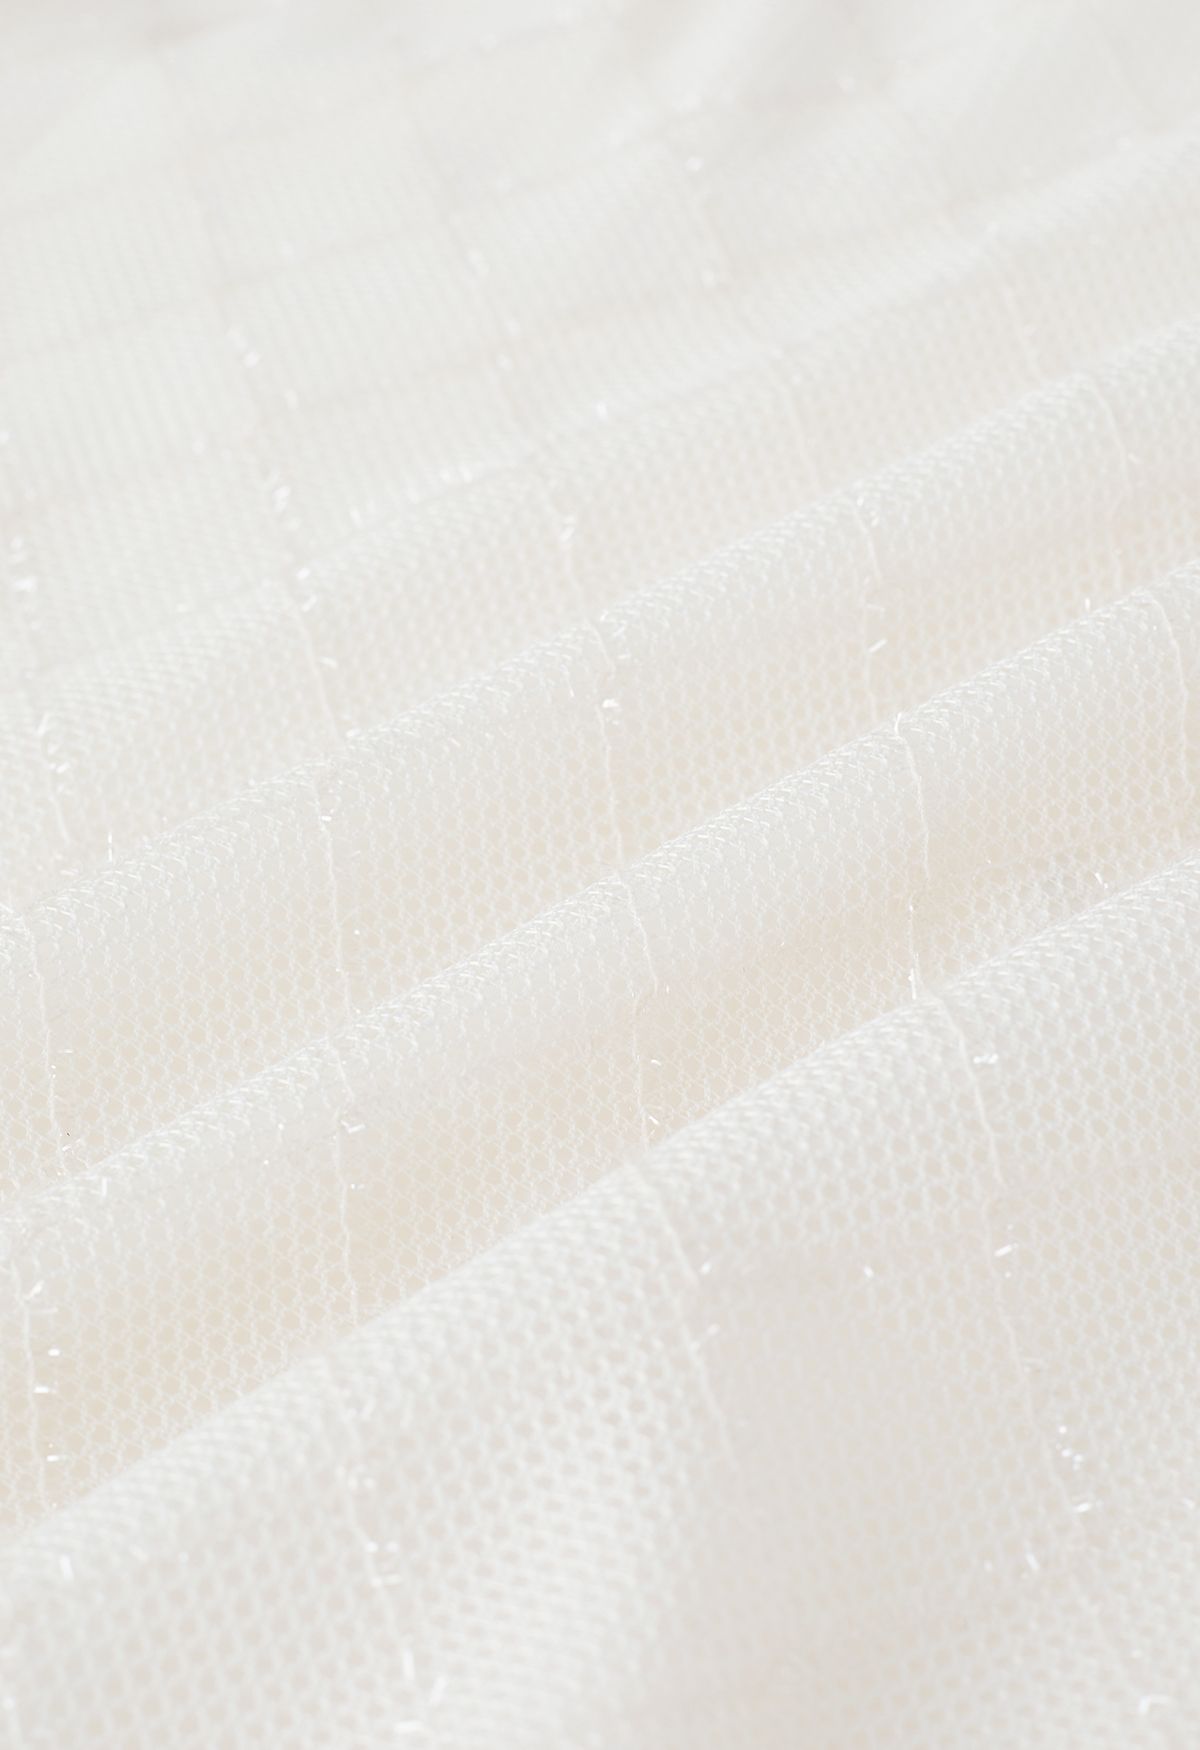 Shimmer Fringed Diamond Net Skirt in Cream